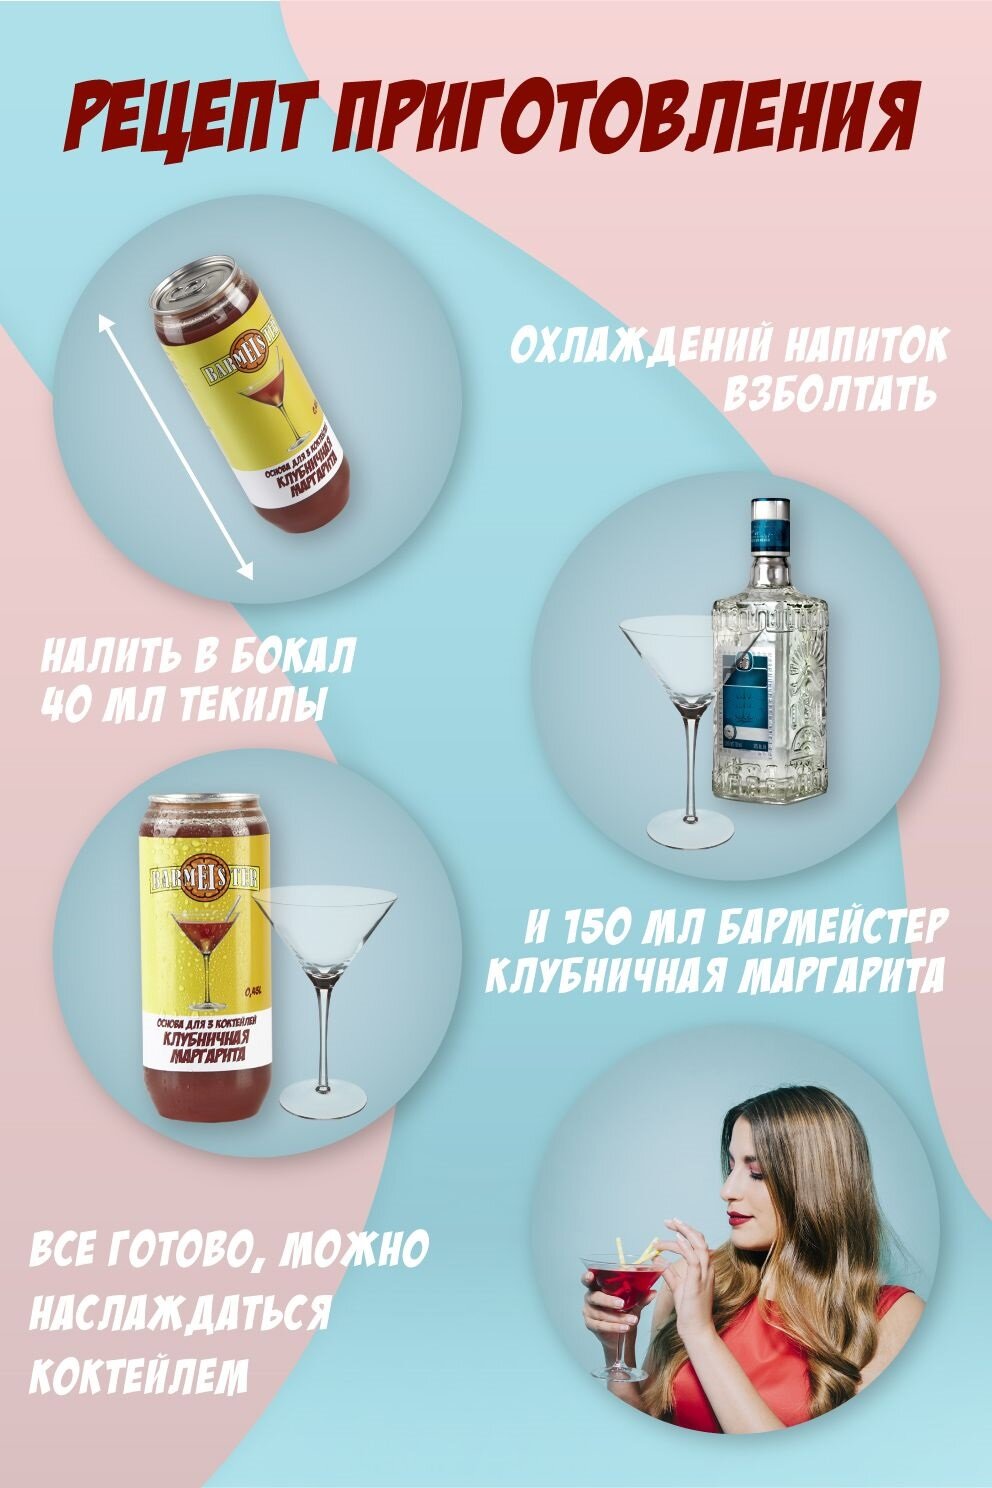 Barmeister "Клубничная Маргарита": безалкогольная натуральная основа для 3 коктейлей, 0.45 л.